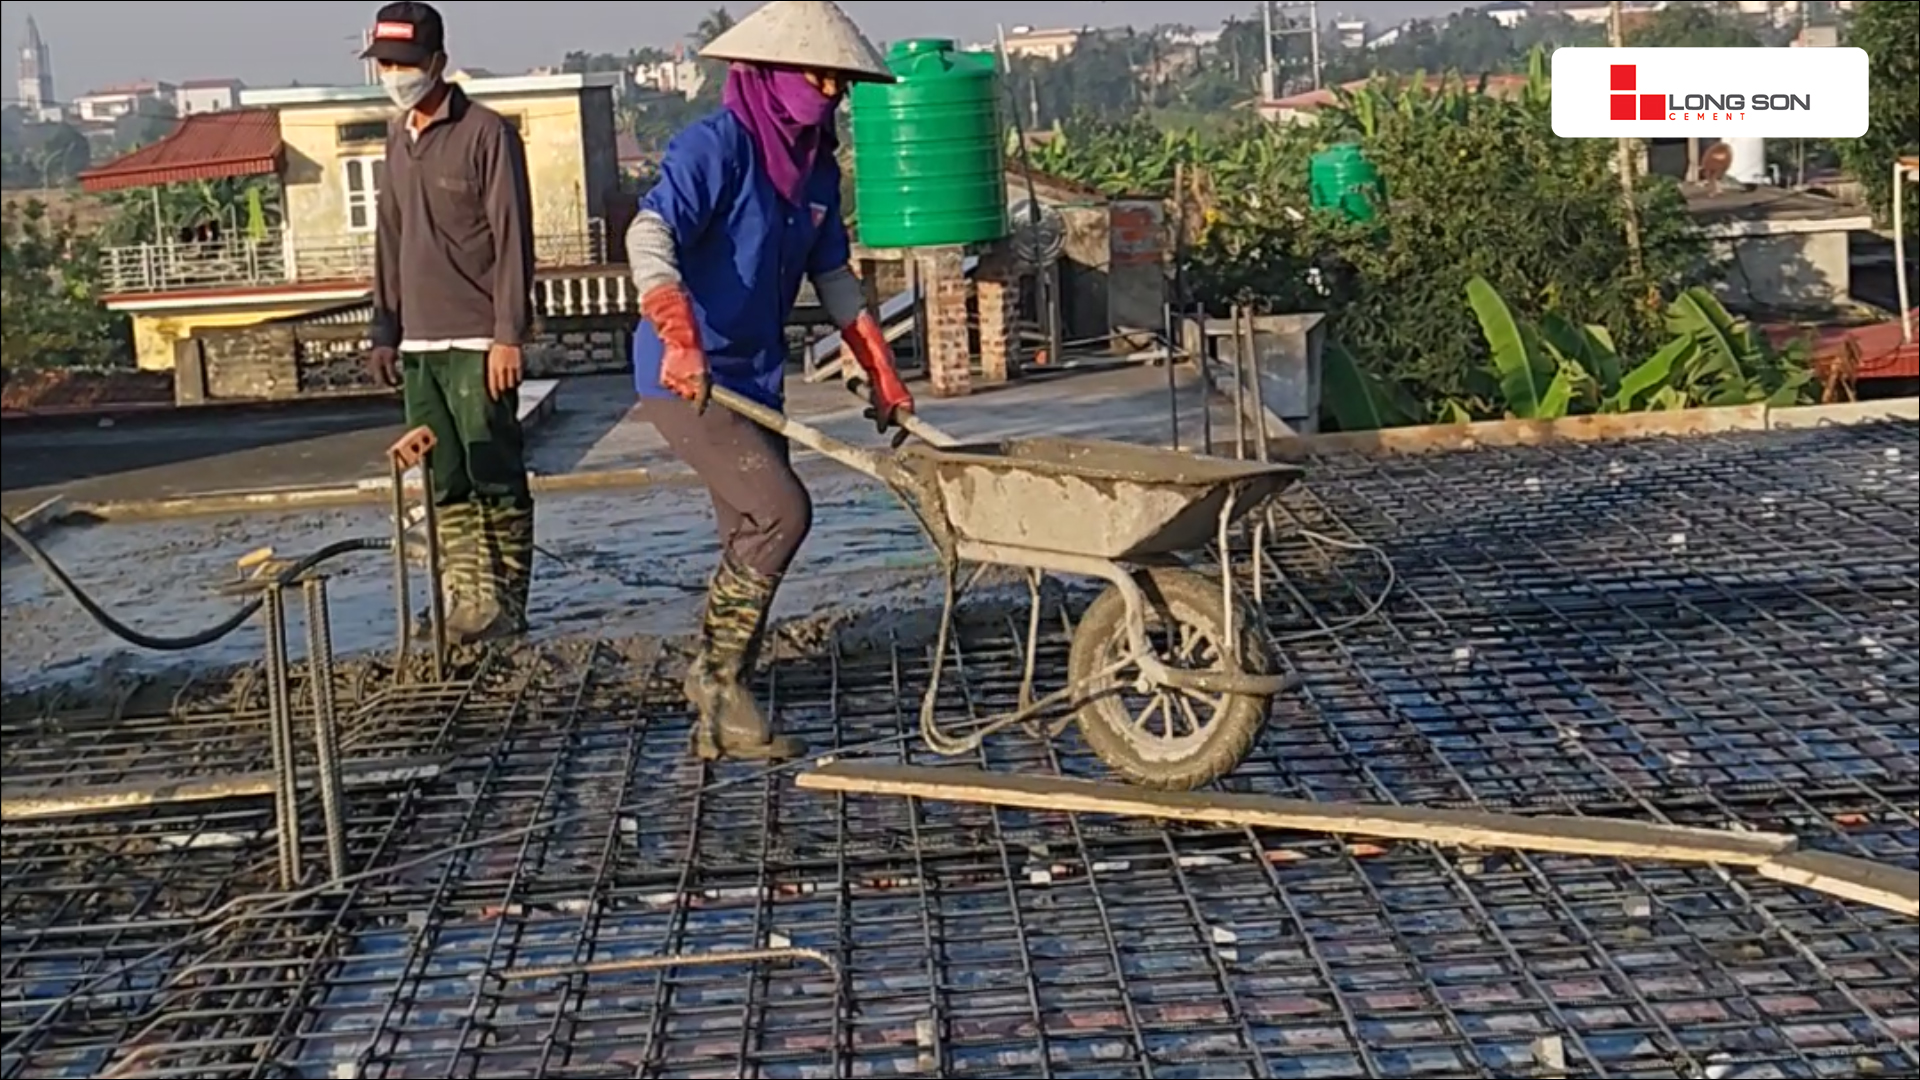 Phóng sự công trình sử dụng Xi măng Long Sơn tại Thái Bình ngày 07/12/2021